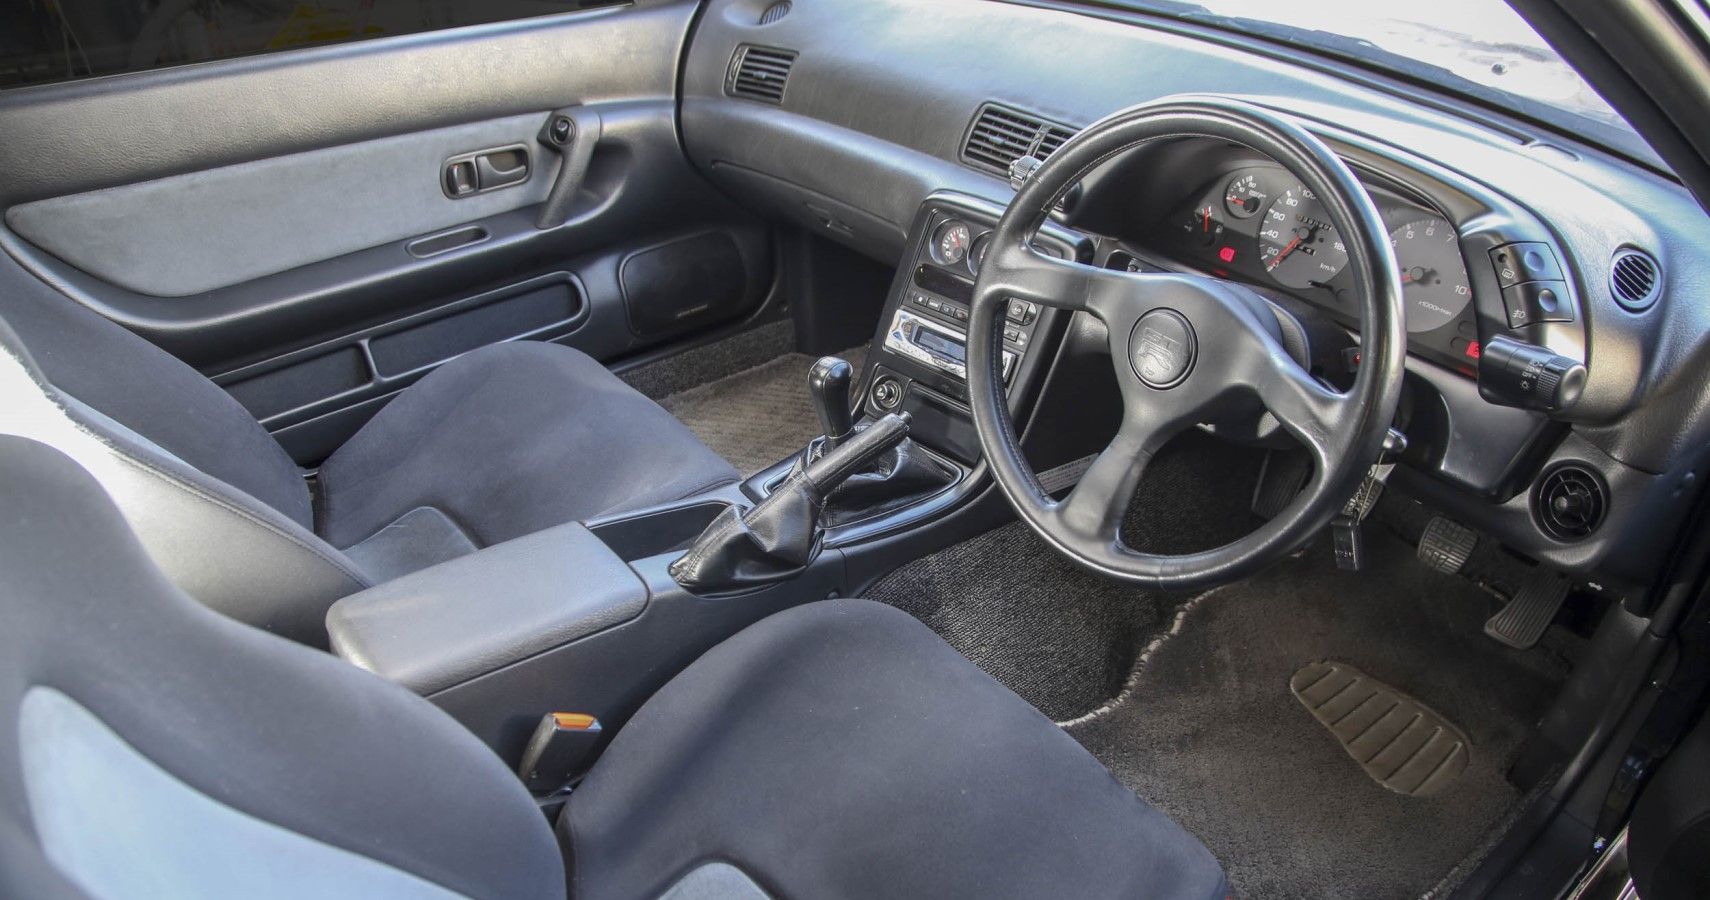 Nissan Skyline R32 GT-R interior view